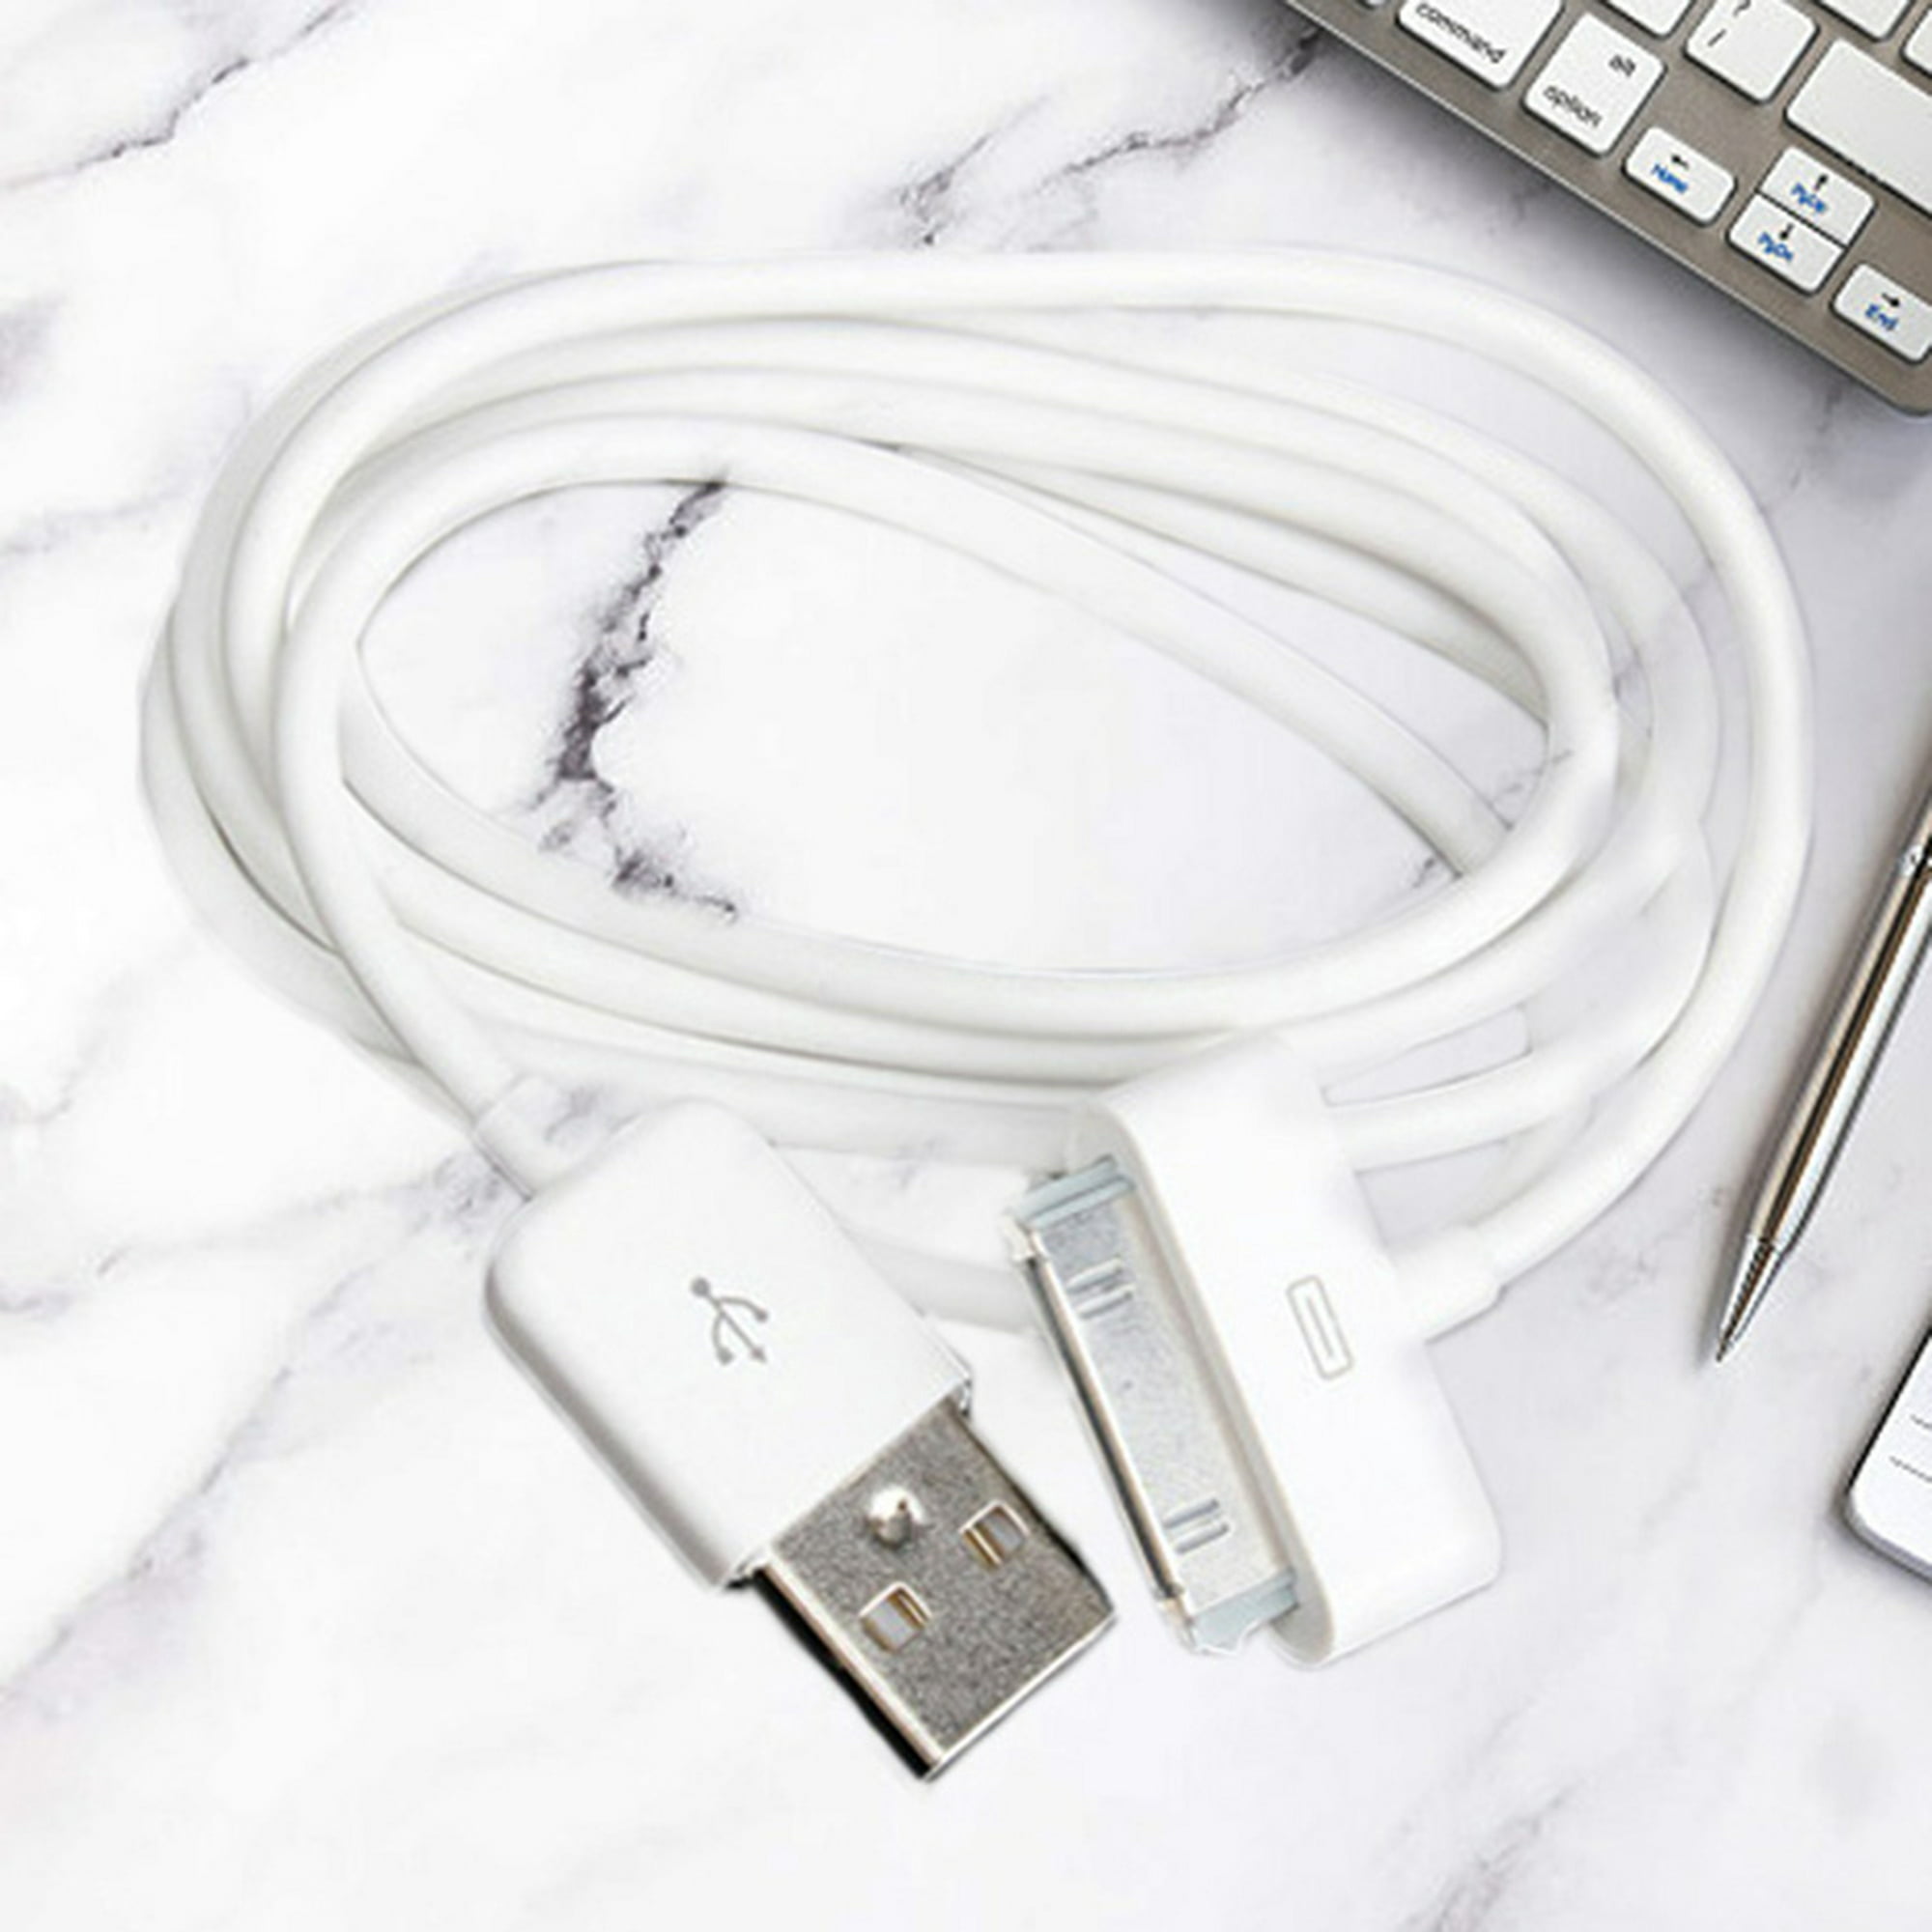 Cable de sincronización de datos de cargador USB blanco de 4 pies para  Apple iPhone 4, 4s, 3G, 3GS, 2G, iPod, iPod touch, iPod Nano